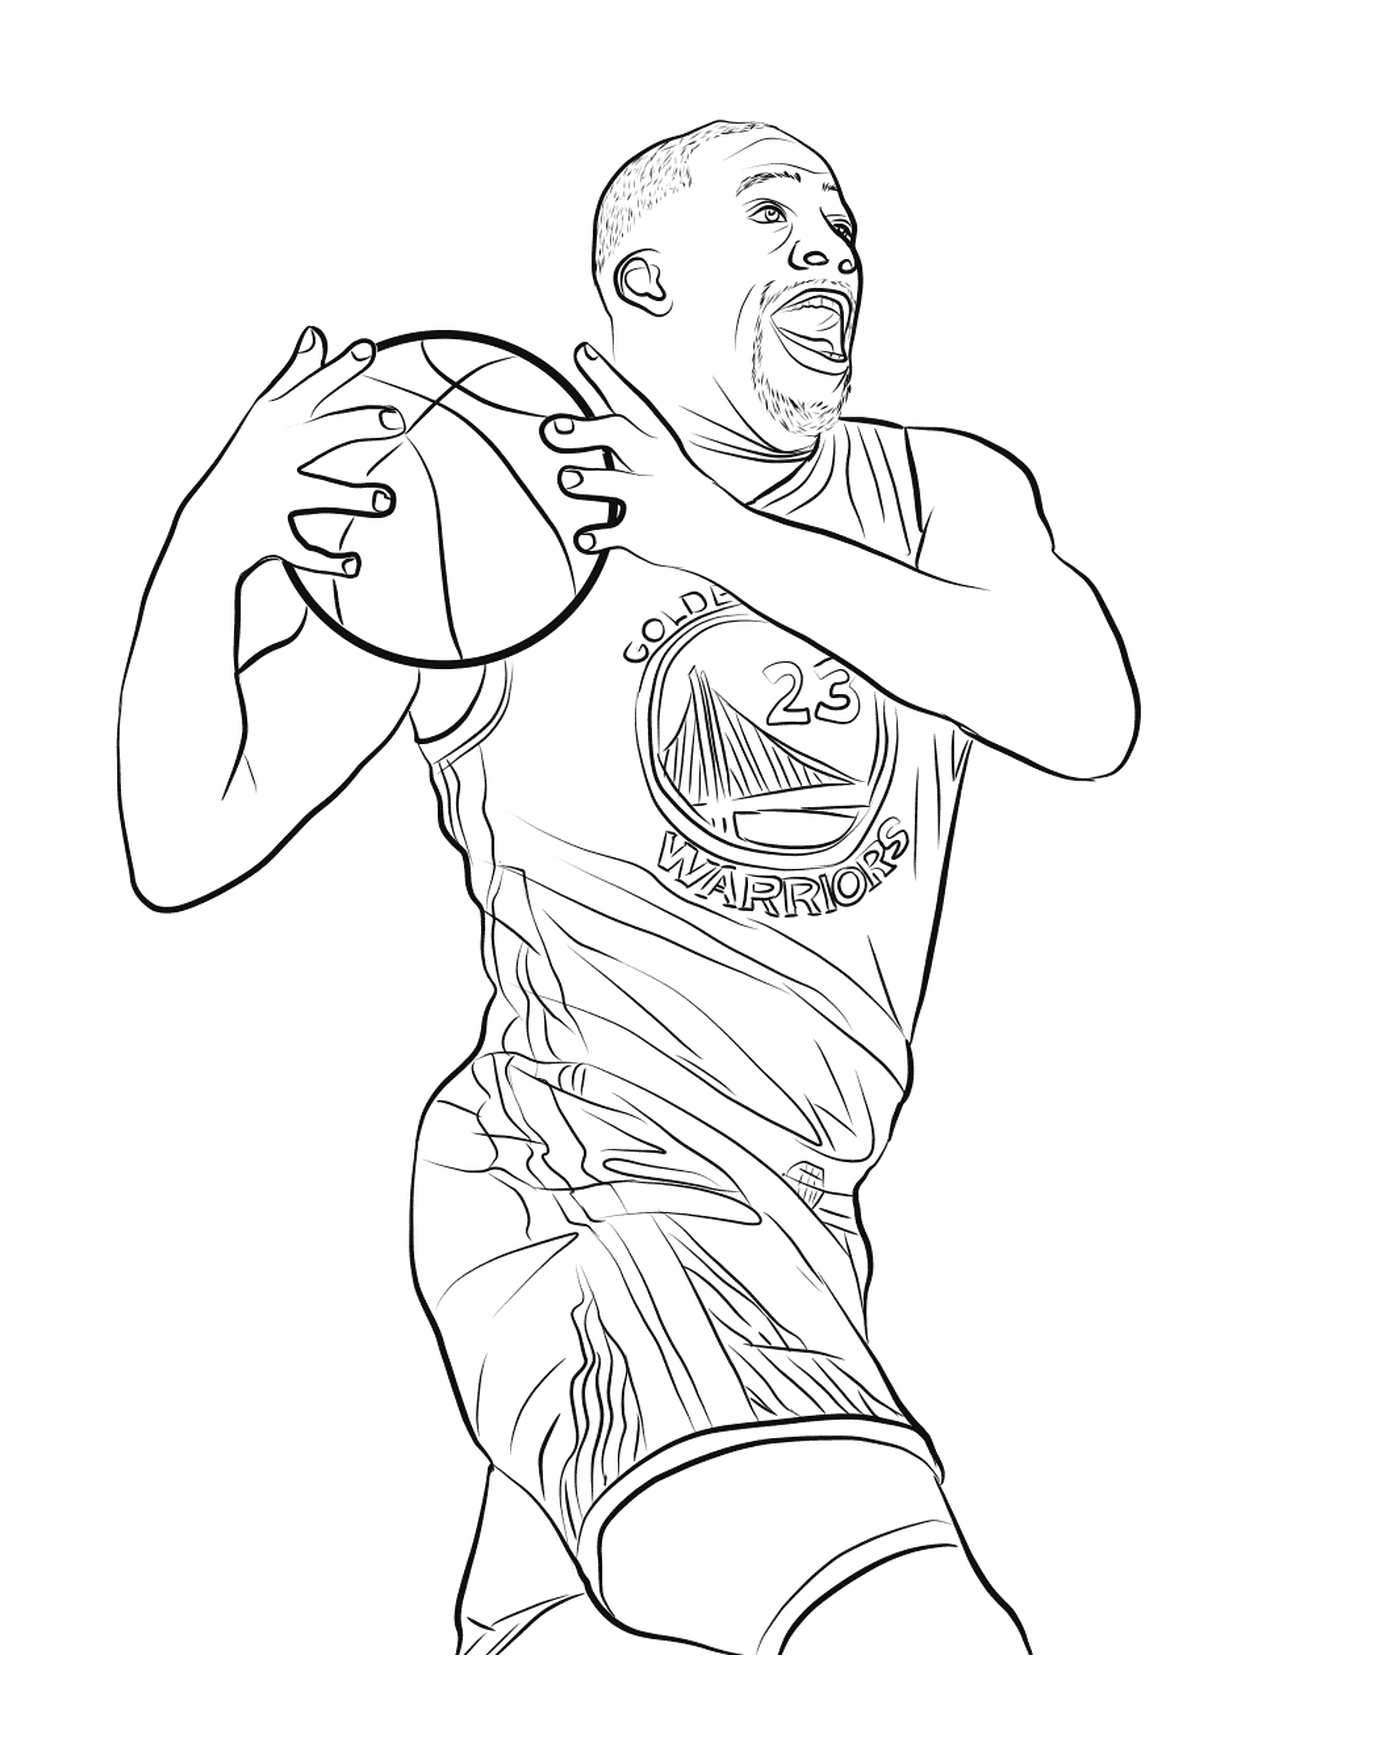  Draymond Green holds a basketball ball 